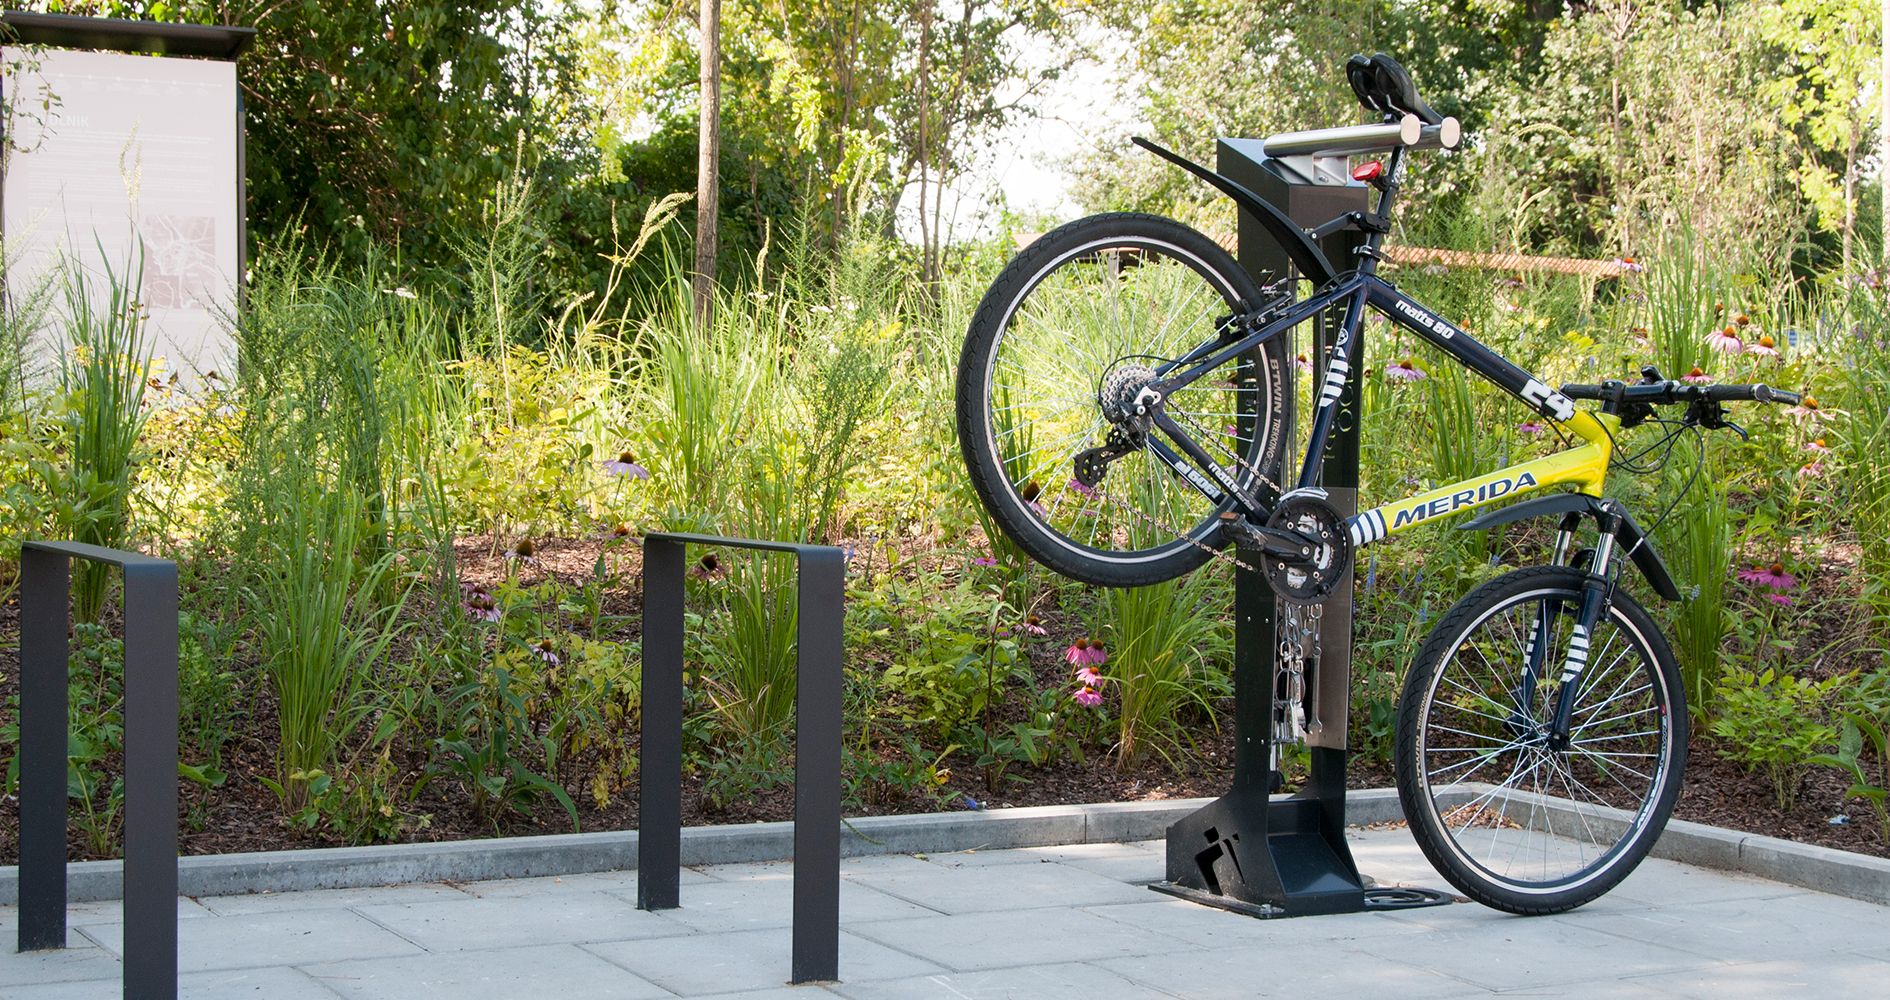 Stacja naprawy rowerów ze stali węglowej z elementami stali nierdzewnej